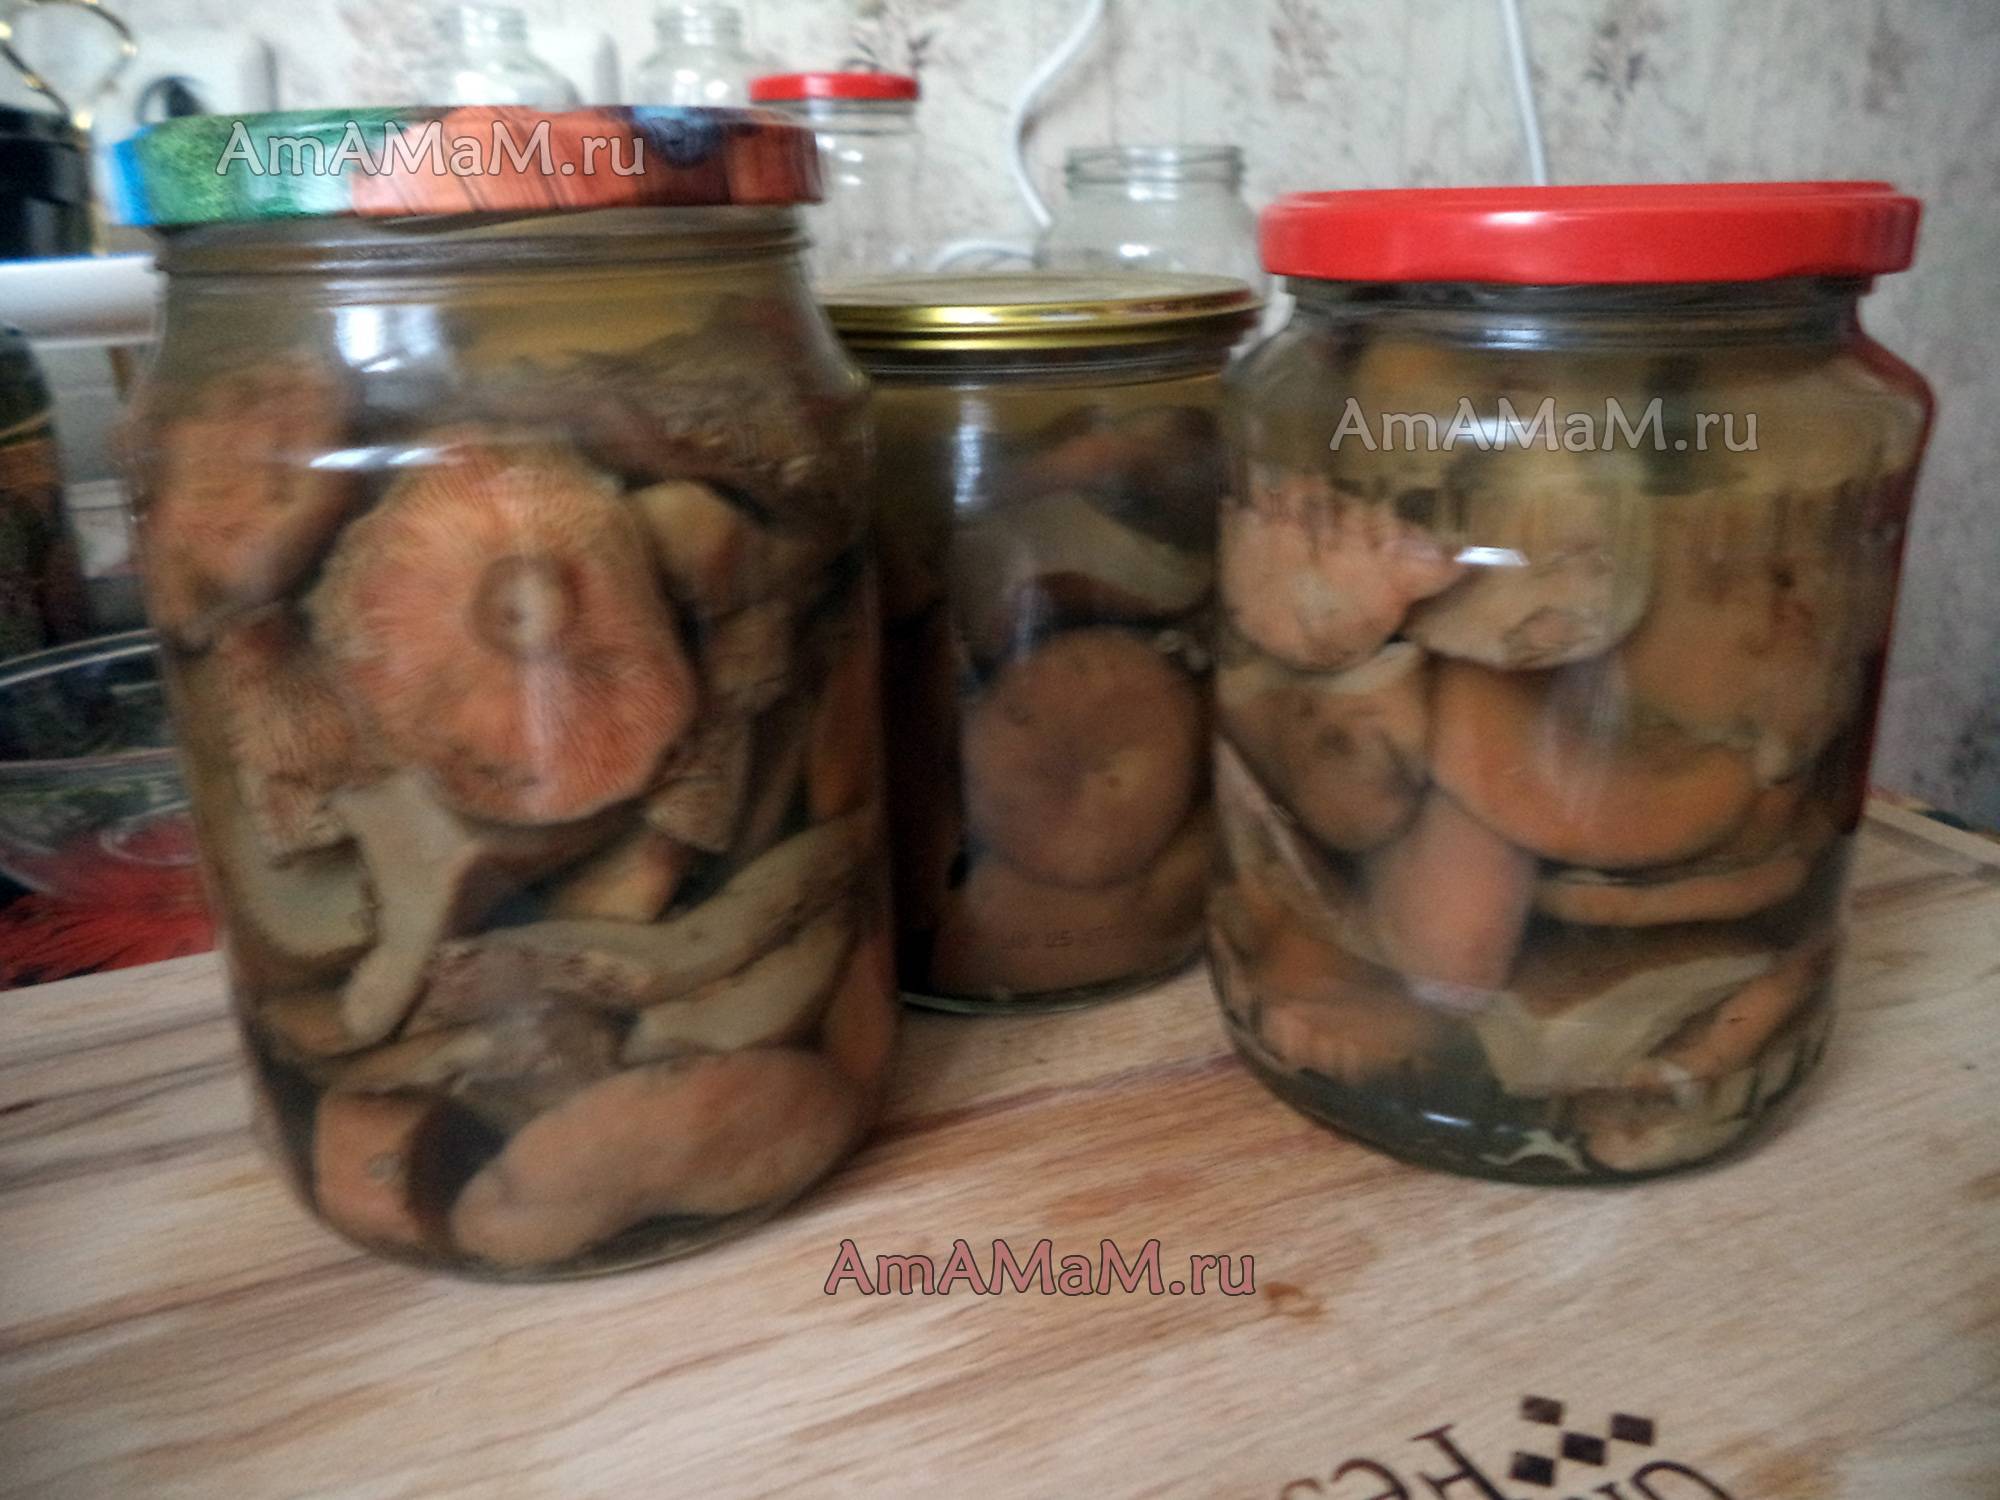 Приготовление грибов рыжиков в домашних условиях. как правильно засолить рыжики: горячая и холодная засолка | дачная жизнь